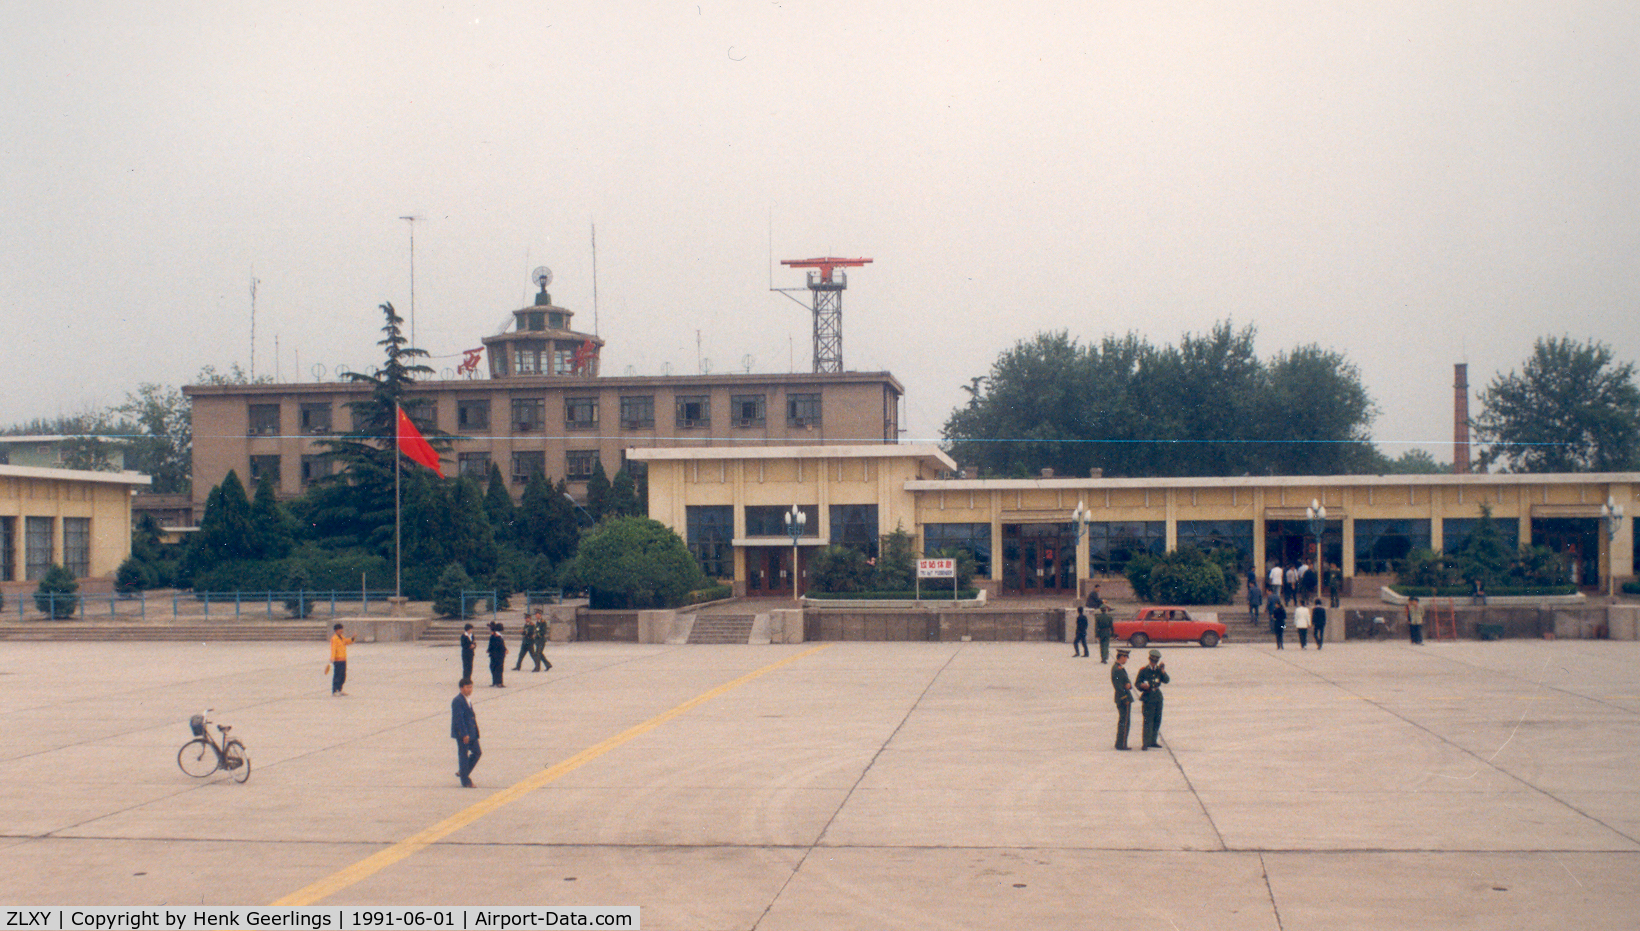 Xi'an Xianyang International Airport, Xi'an, Shaanxi China (ZLXY) - Xian Airport , China , June 1991